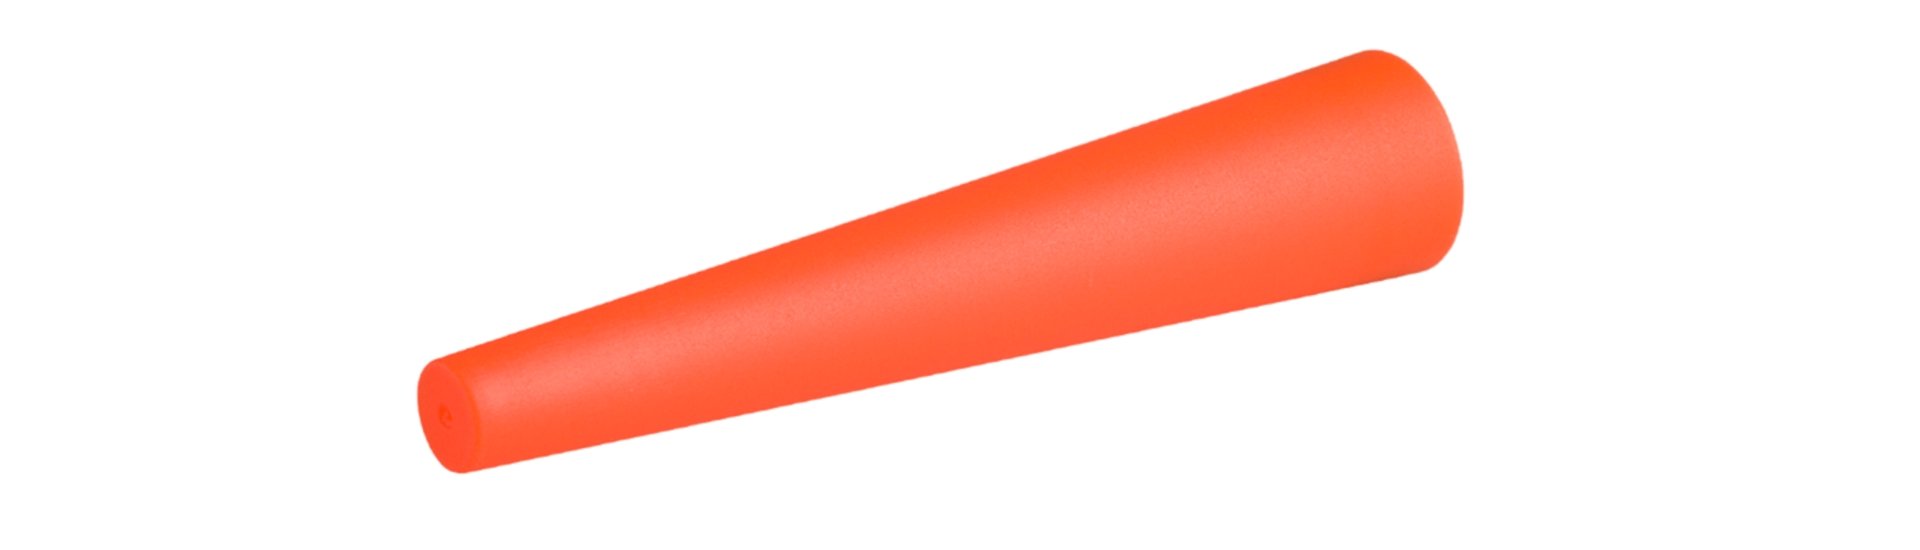 Ledlenser Capuchon de signalisation orange pour P7 / P7R / T7.2 / T7M / i7